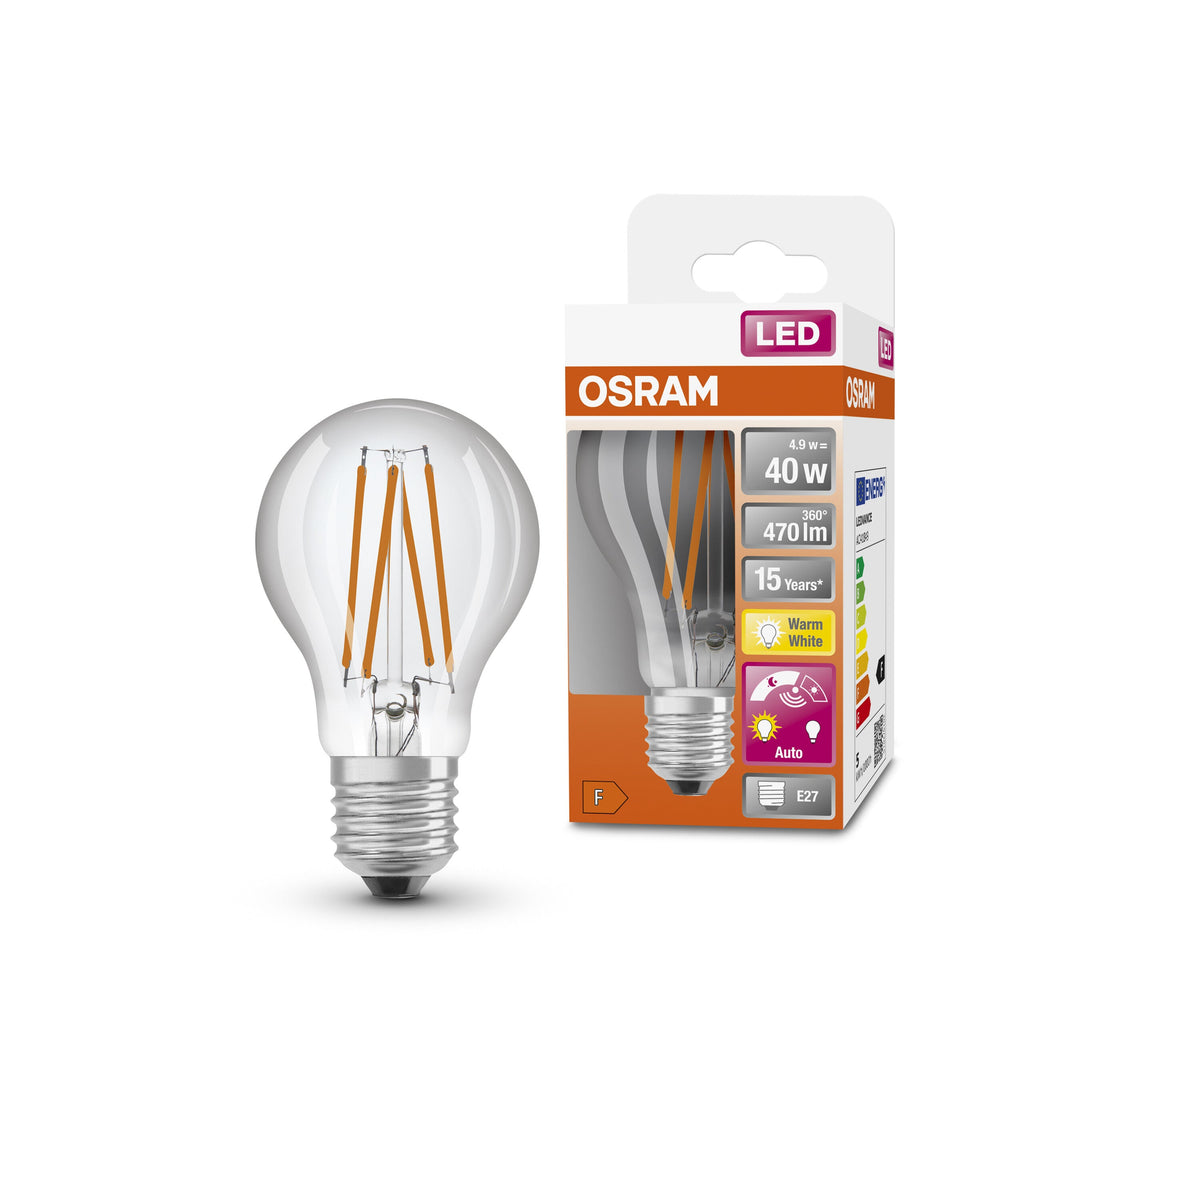 Lampada LED OSRAM Star+ con sensore di luce diurna per attacco E27, aspetto filamento, bianco caldo (2700K), 470 lumen, ricambio per lampadine convenzionali da 40 W, non dimmerabile, confezione da 1